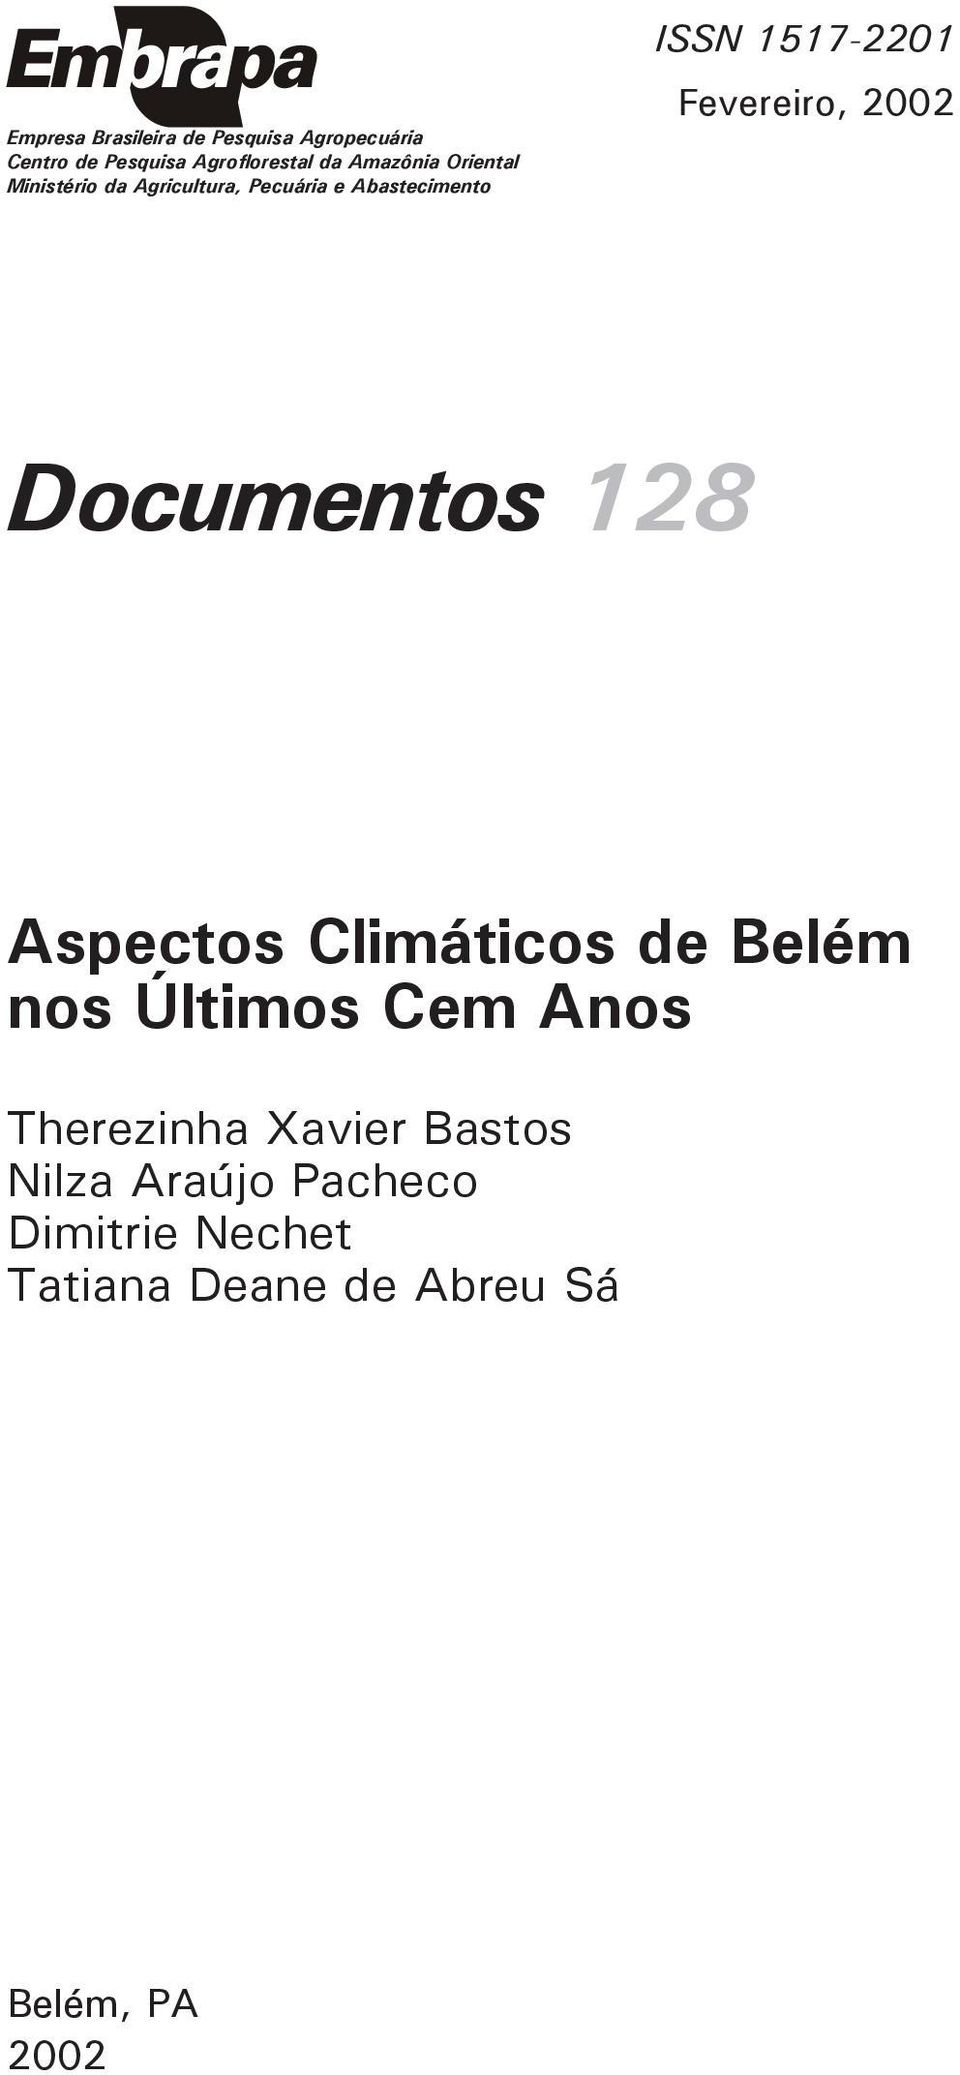 Fevereiro, 2002 Documentos 128 Aspectos Climáticos de Belém nos Últimos Cem Anos